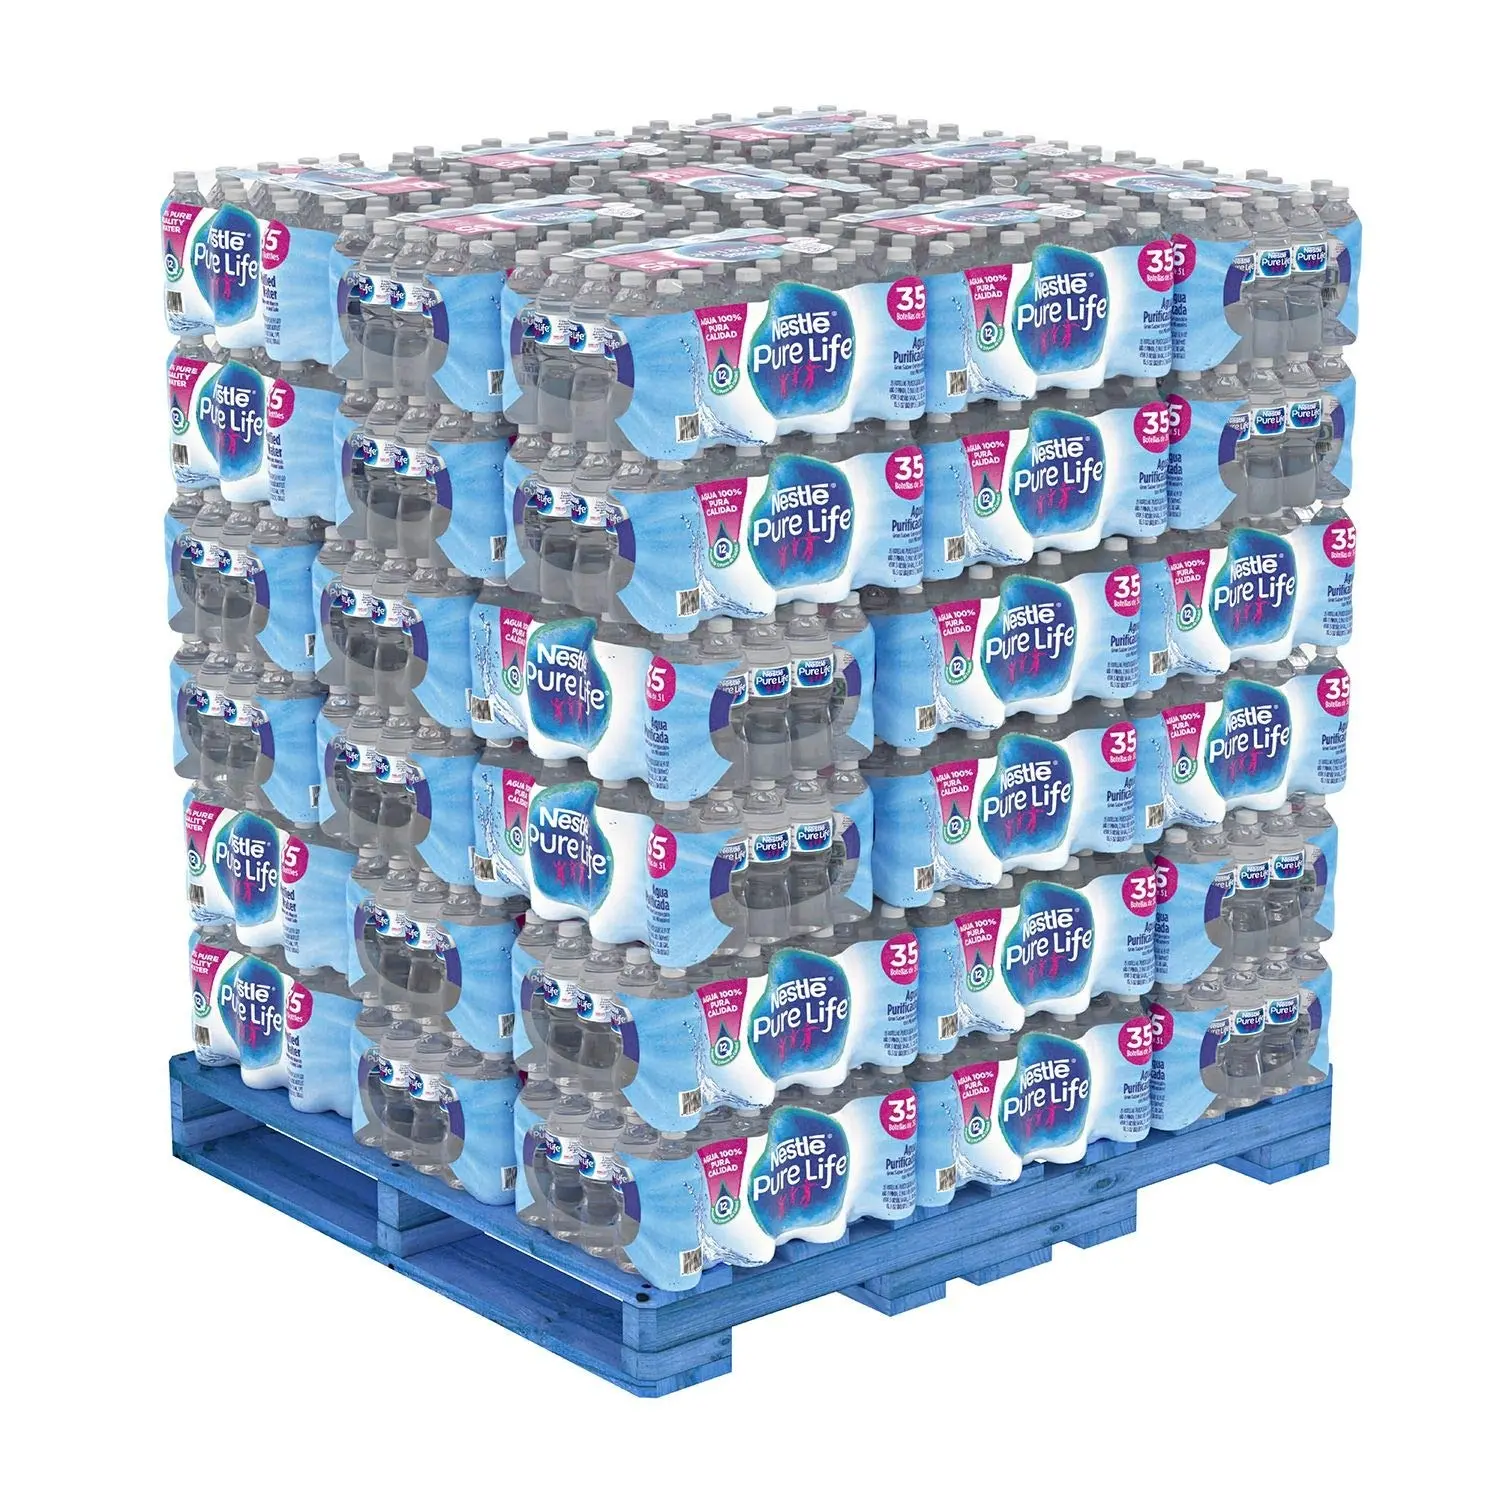 Nestlé de haute qualité-Pure Life eau potable en bouteille-12x1.5 litres à bas prix